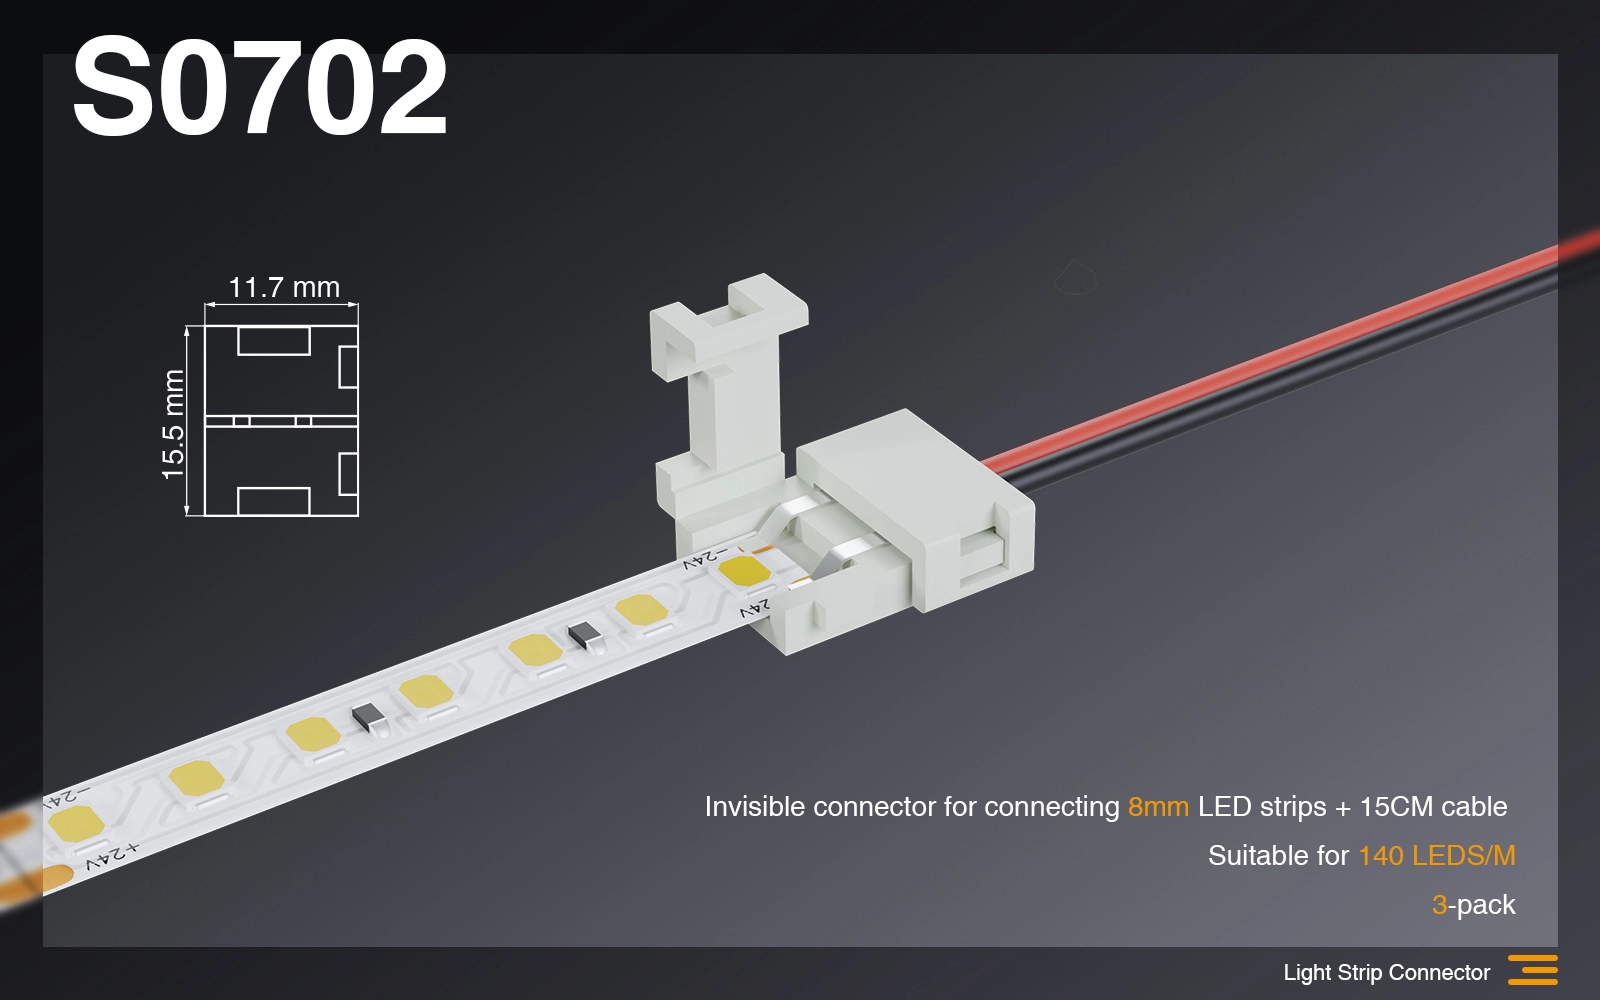 Connettore invisibile per collegare strisce led 8mm + cavo da 15CM  /Adatto per 140 LEDS-Connettori Strisce LED-S0702 01-HOOLED